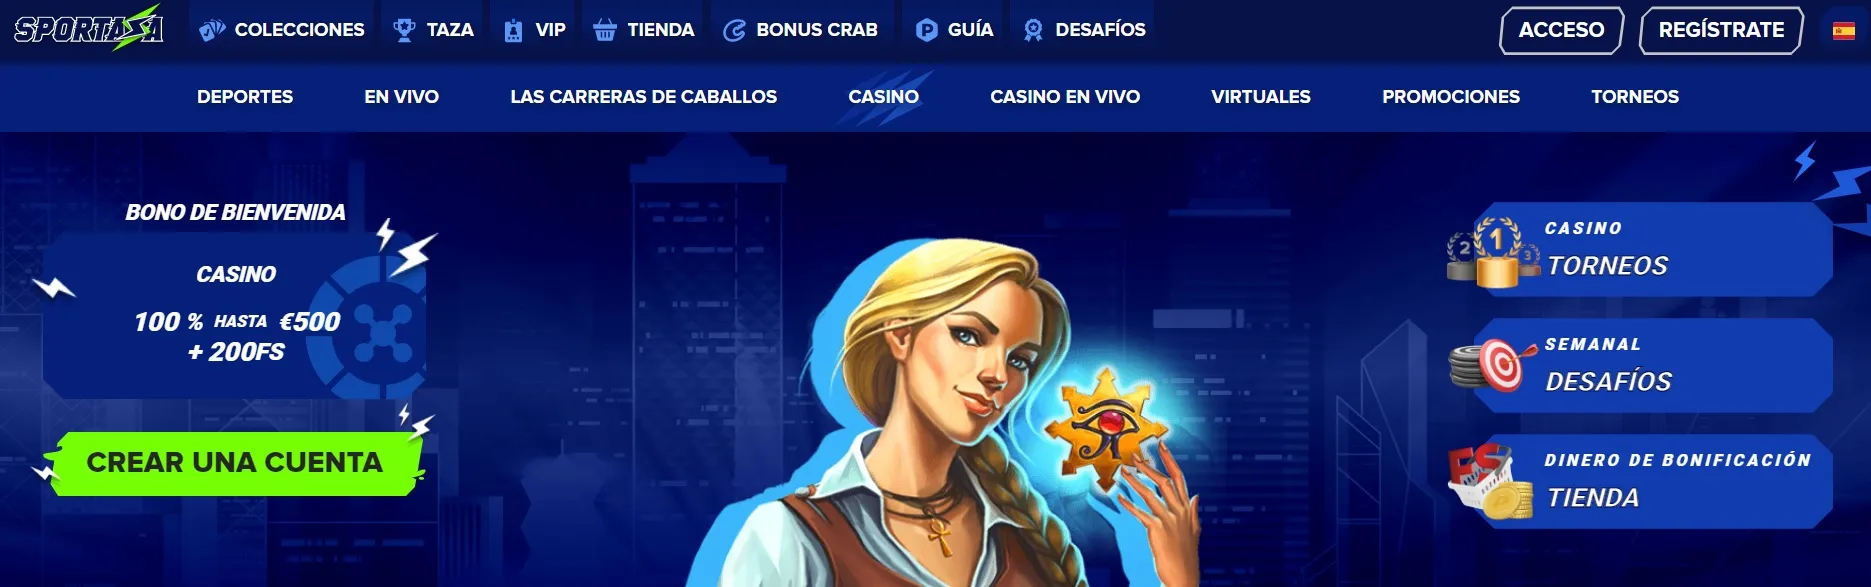 página principal casino